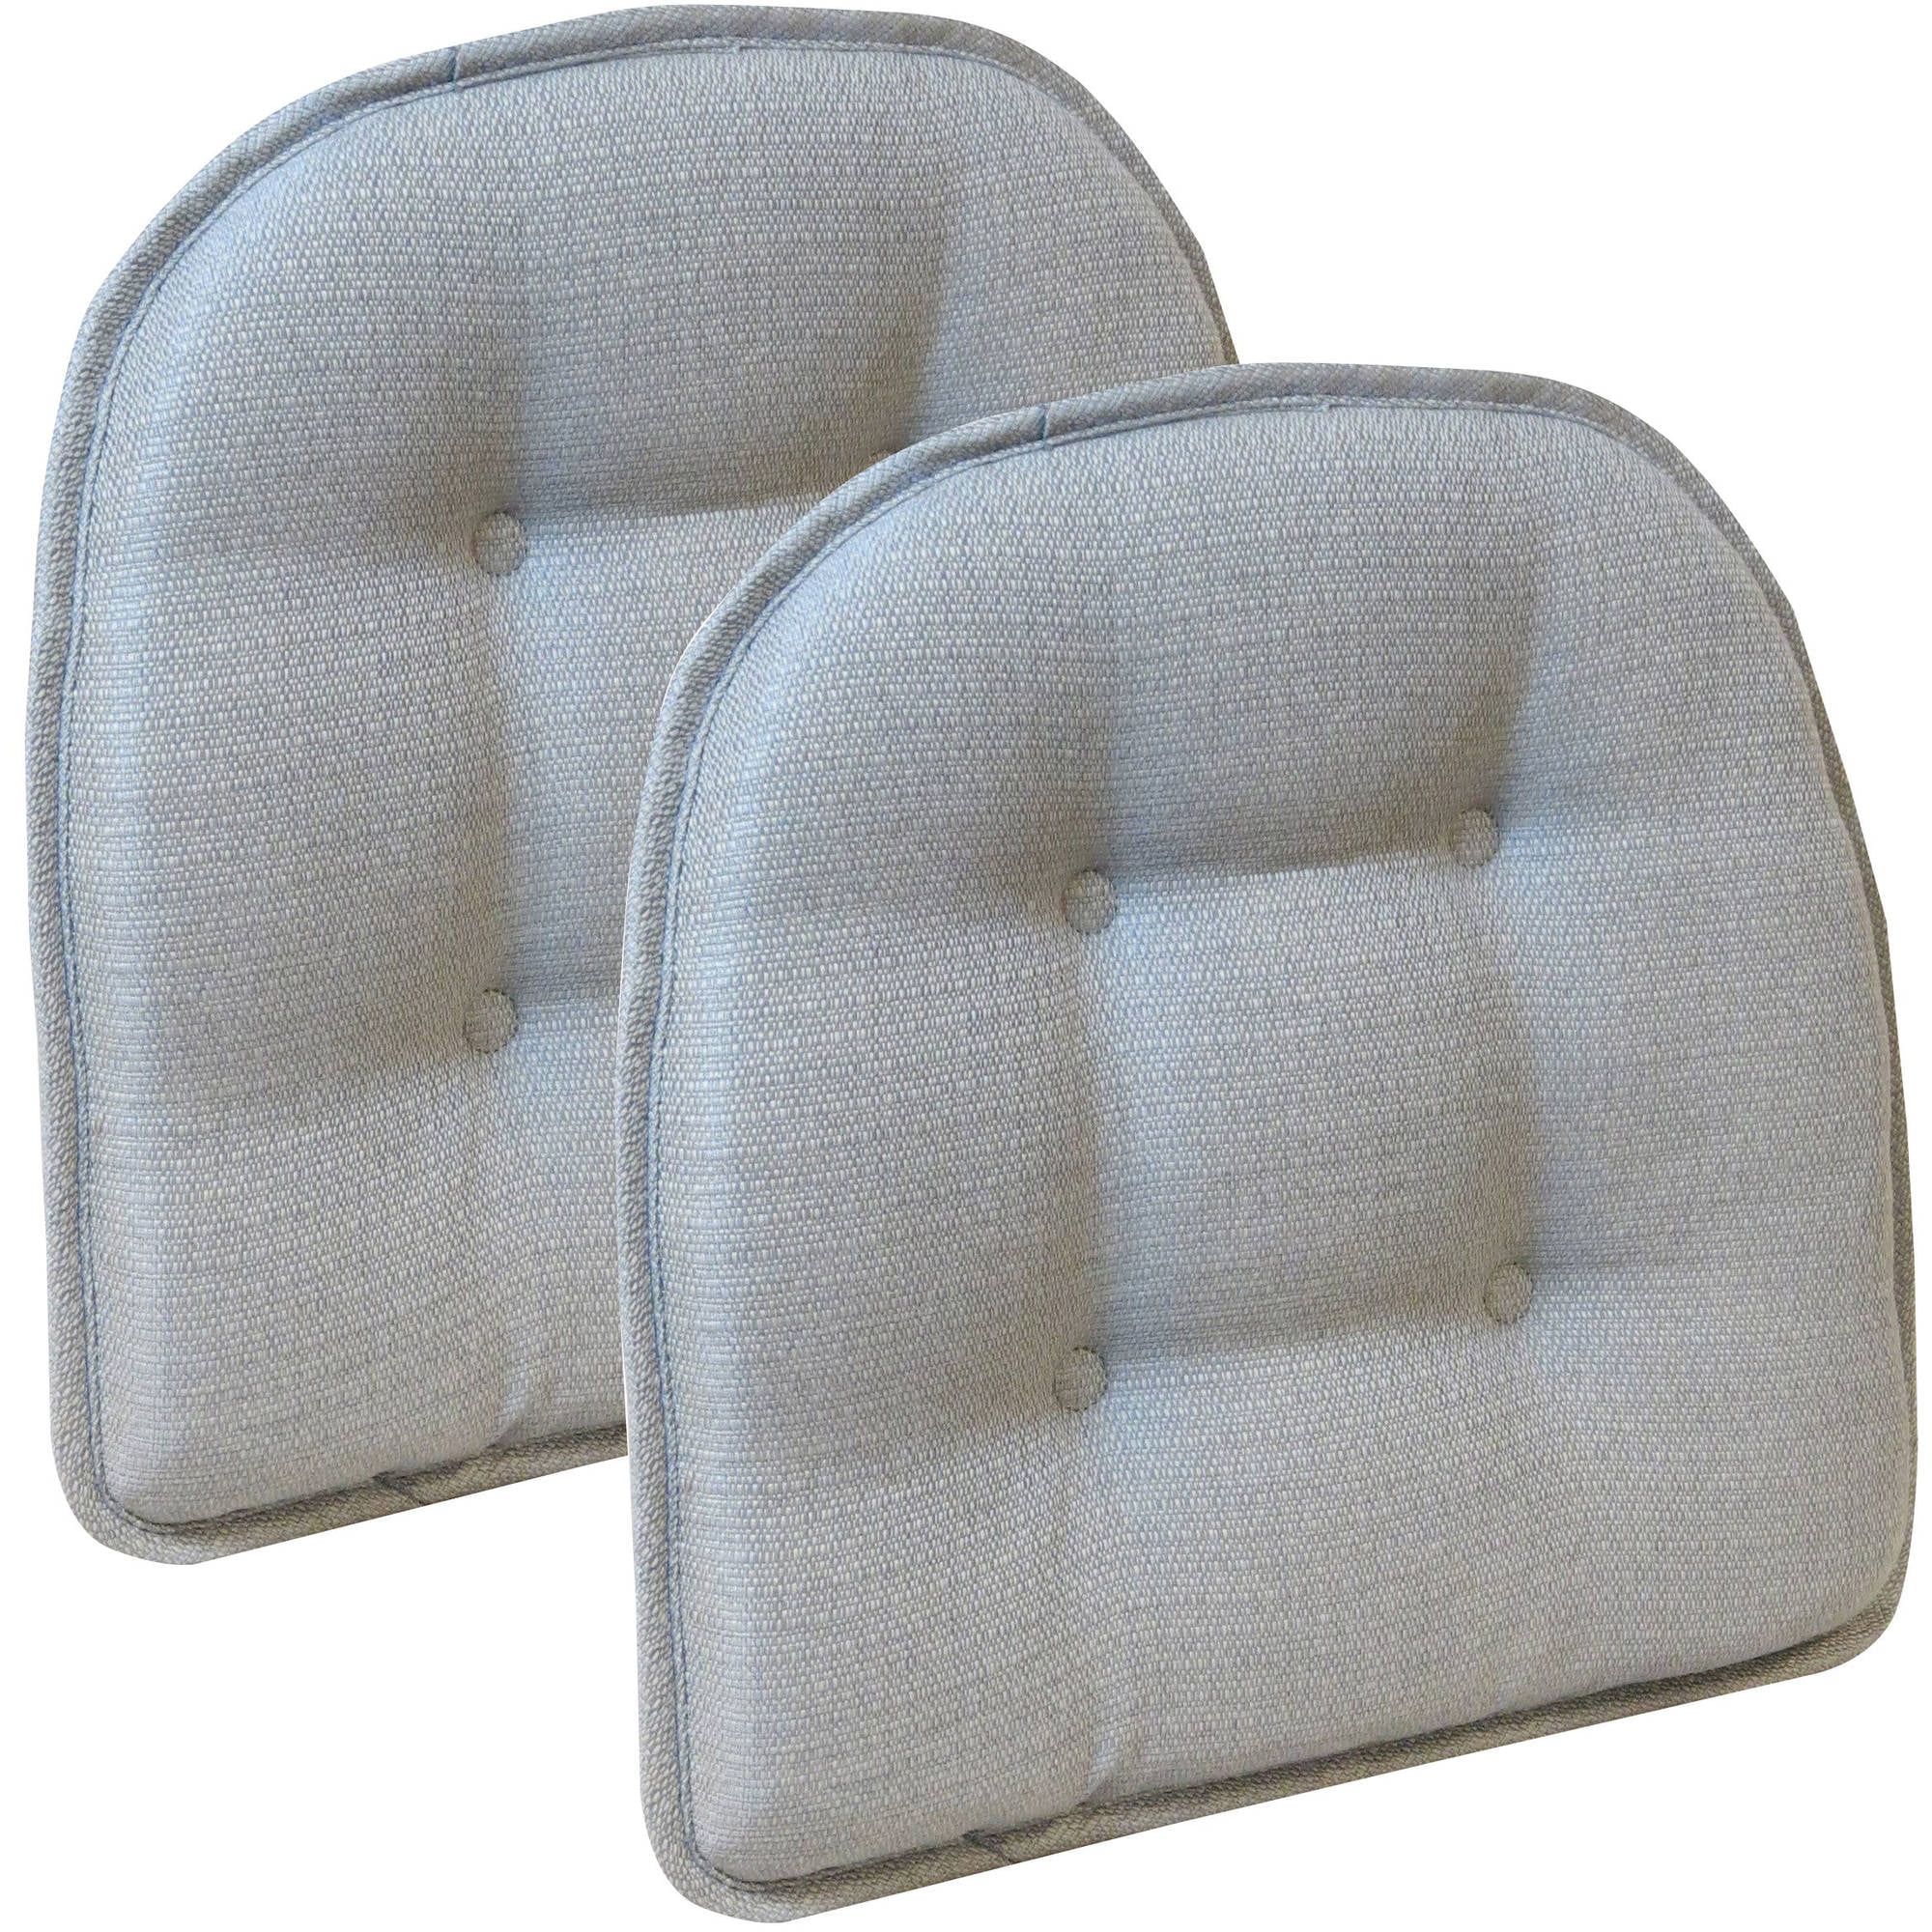 Gripper 15 X 16 Non Slip Omega Tufted, Gripper Chair Cushions 17 X